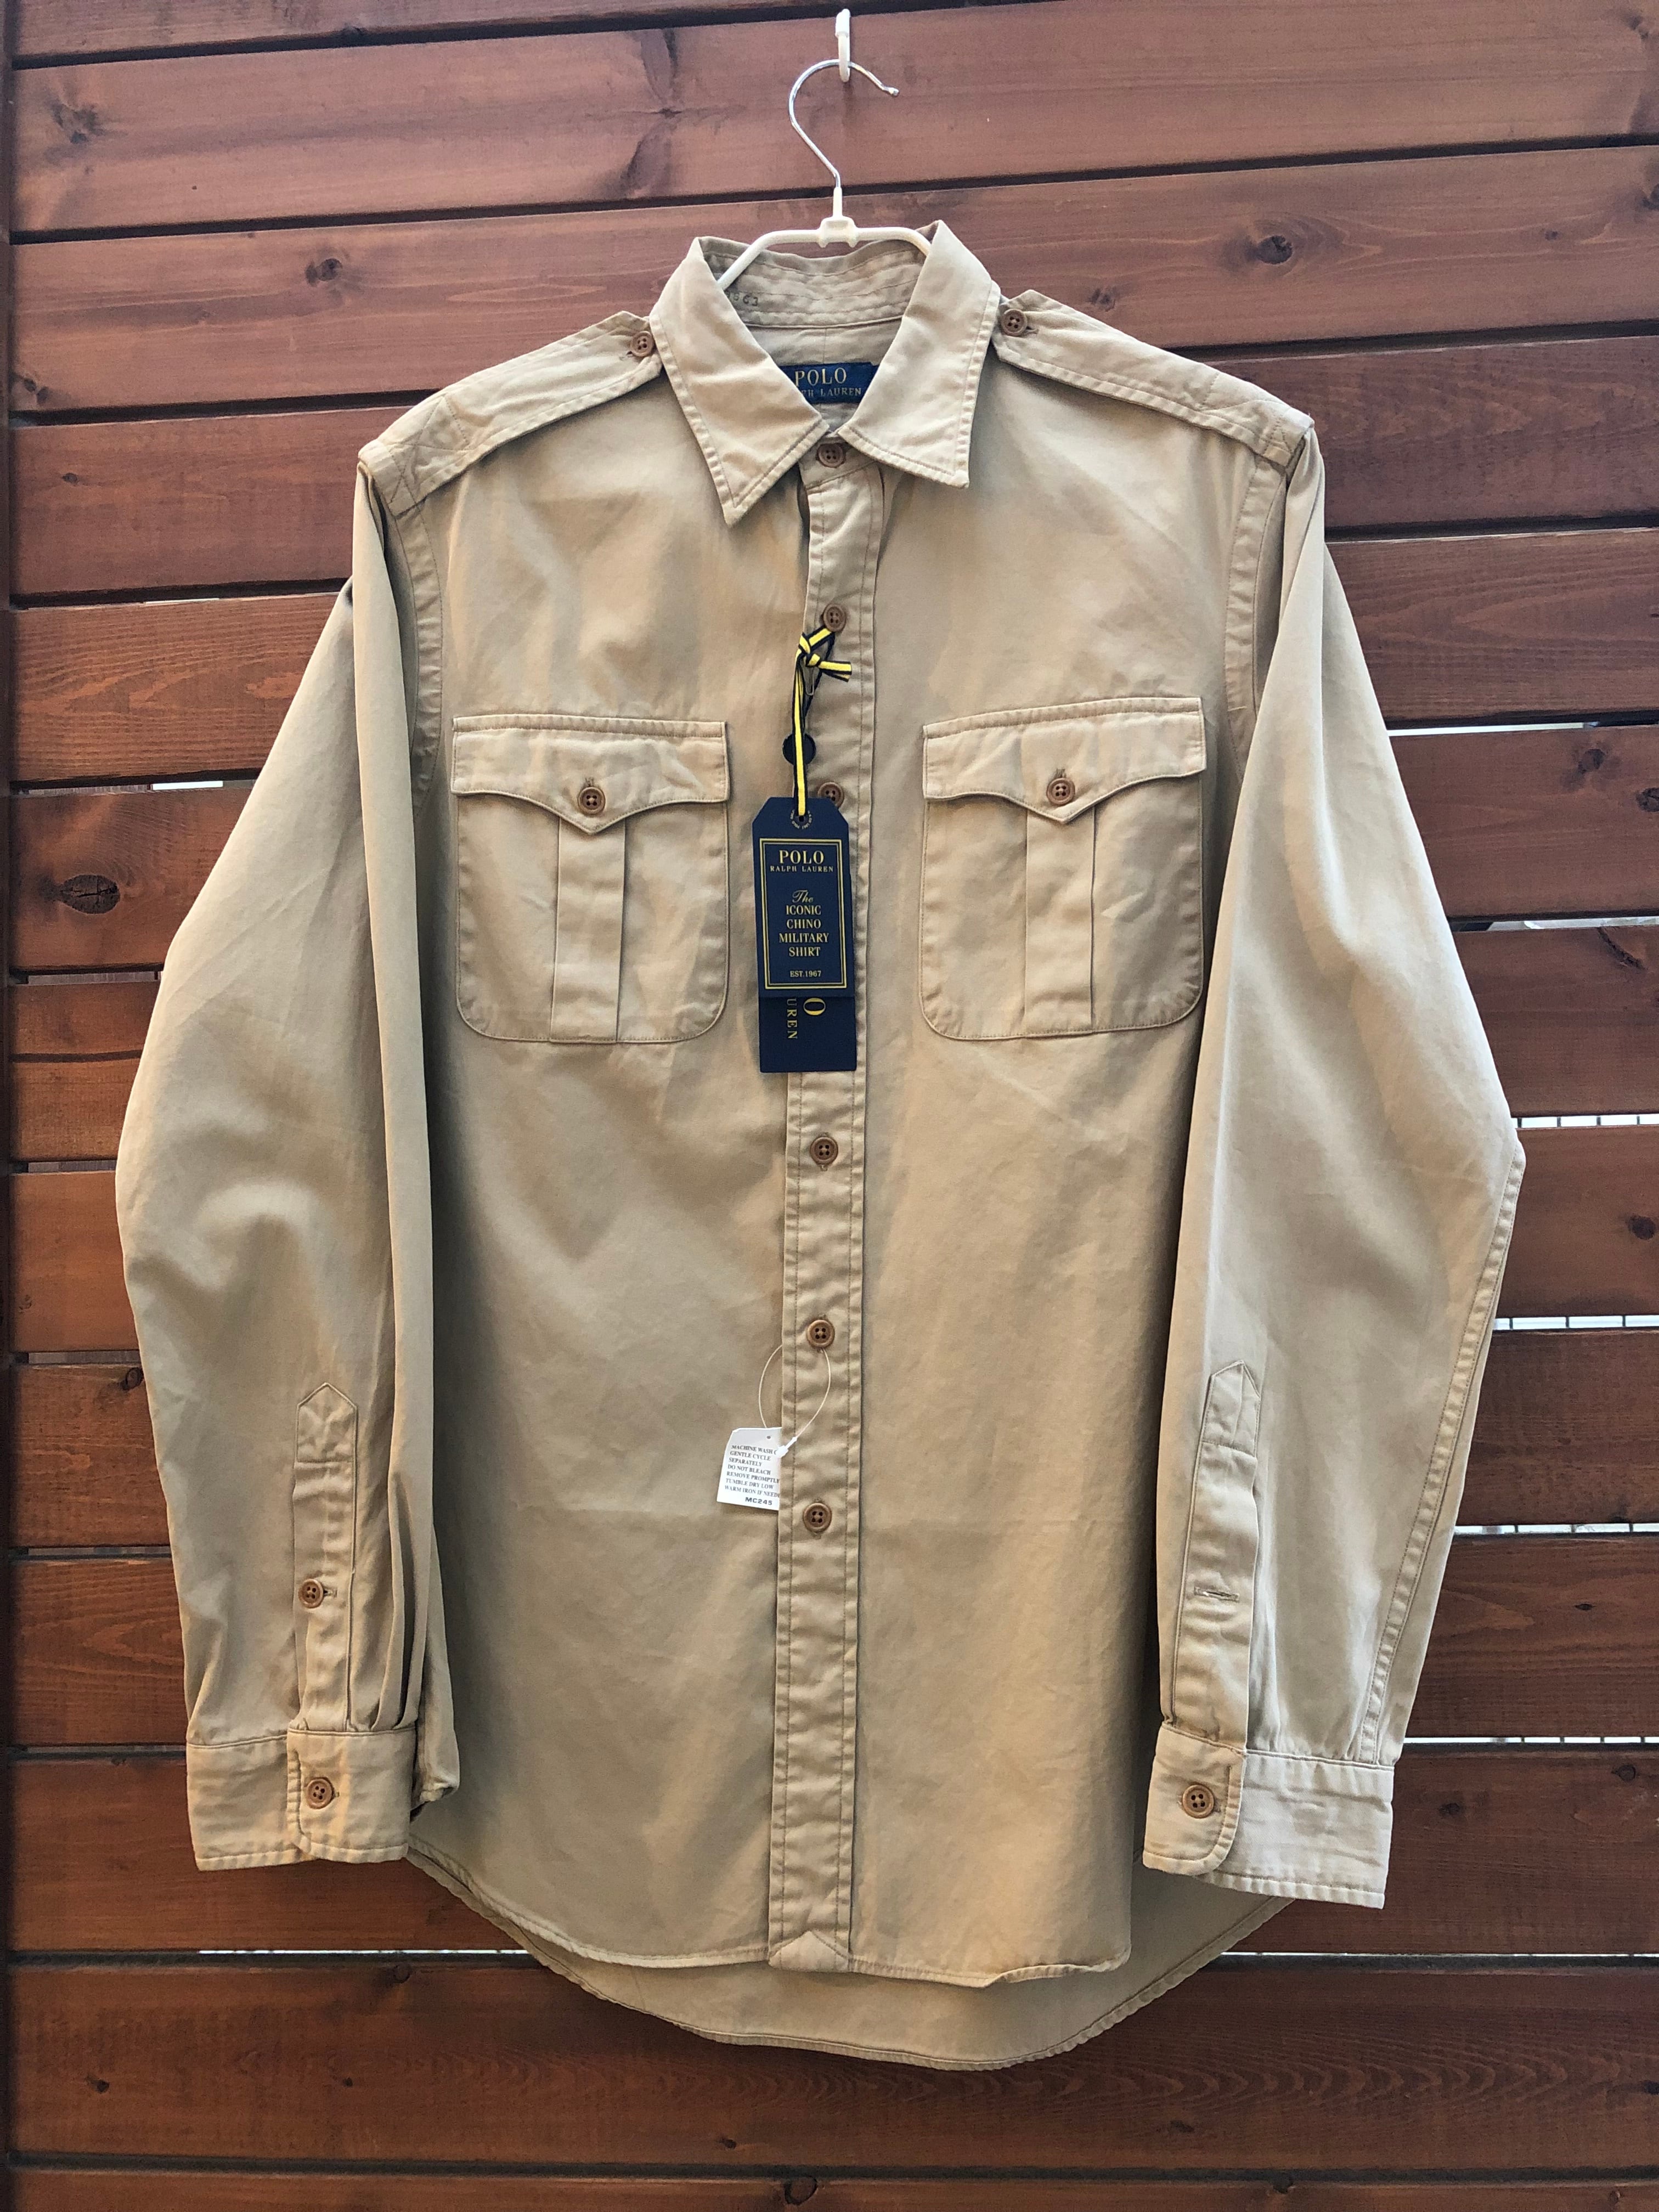 POLO Ralph Lauren Military shirts | bucktownjp